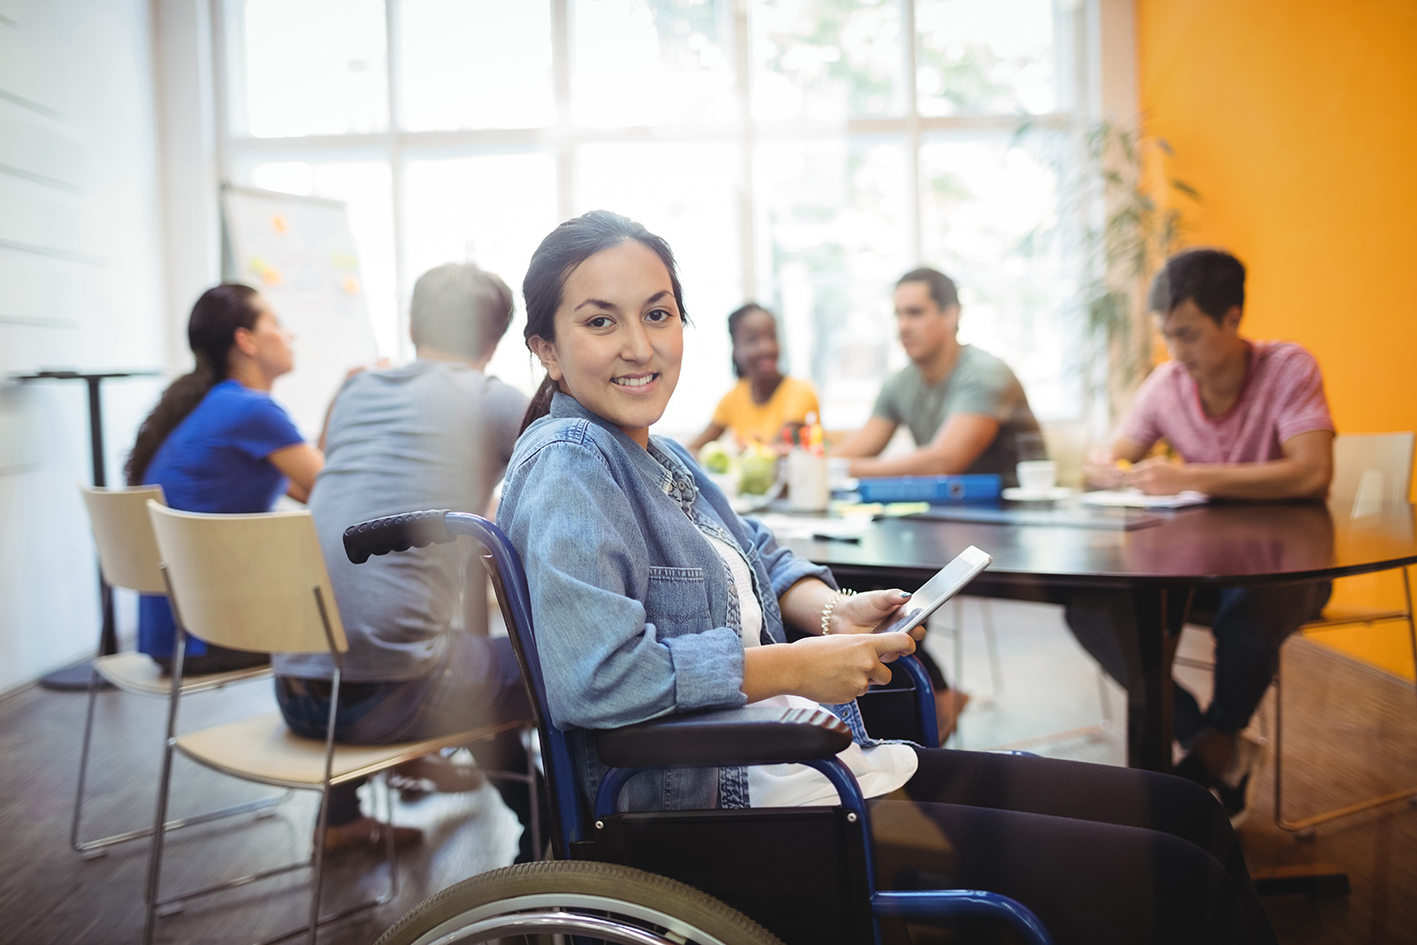 Les contrats d'alternance pour un accès à l'emploi des personnes handicapés